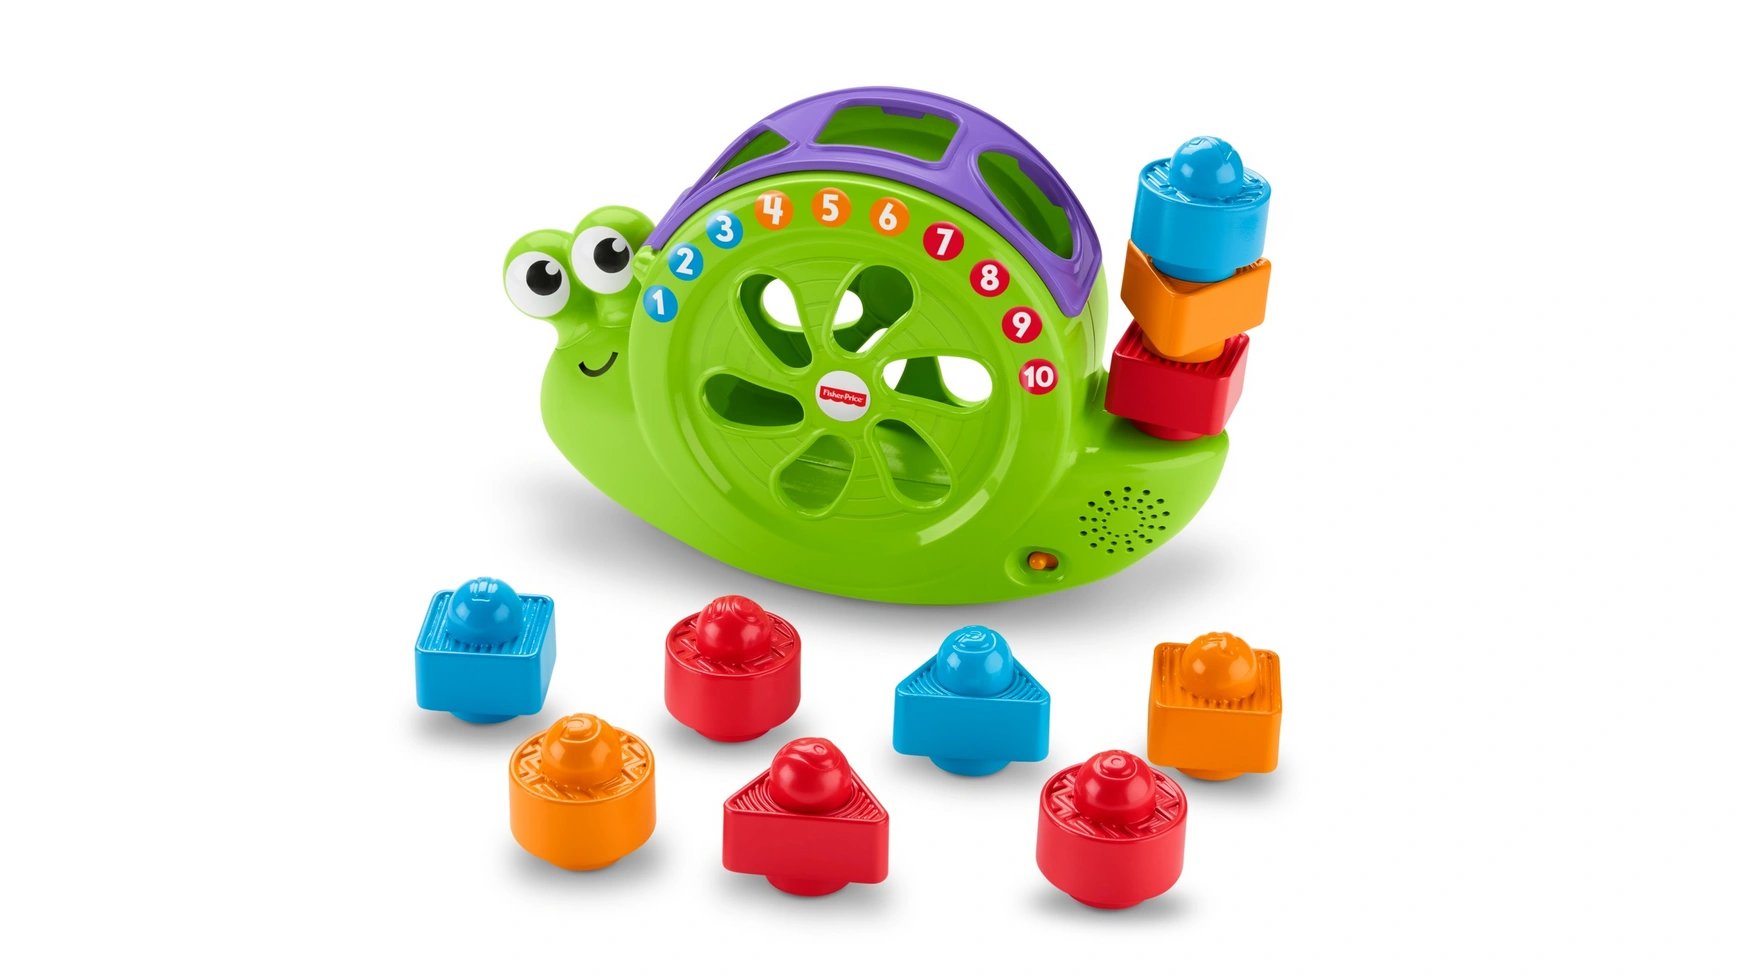 Музыкальная улитка Fisher Price Babies, подключаемая игрушка, складывающаяся игра, развивающая игрушка